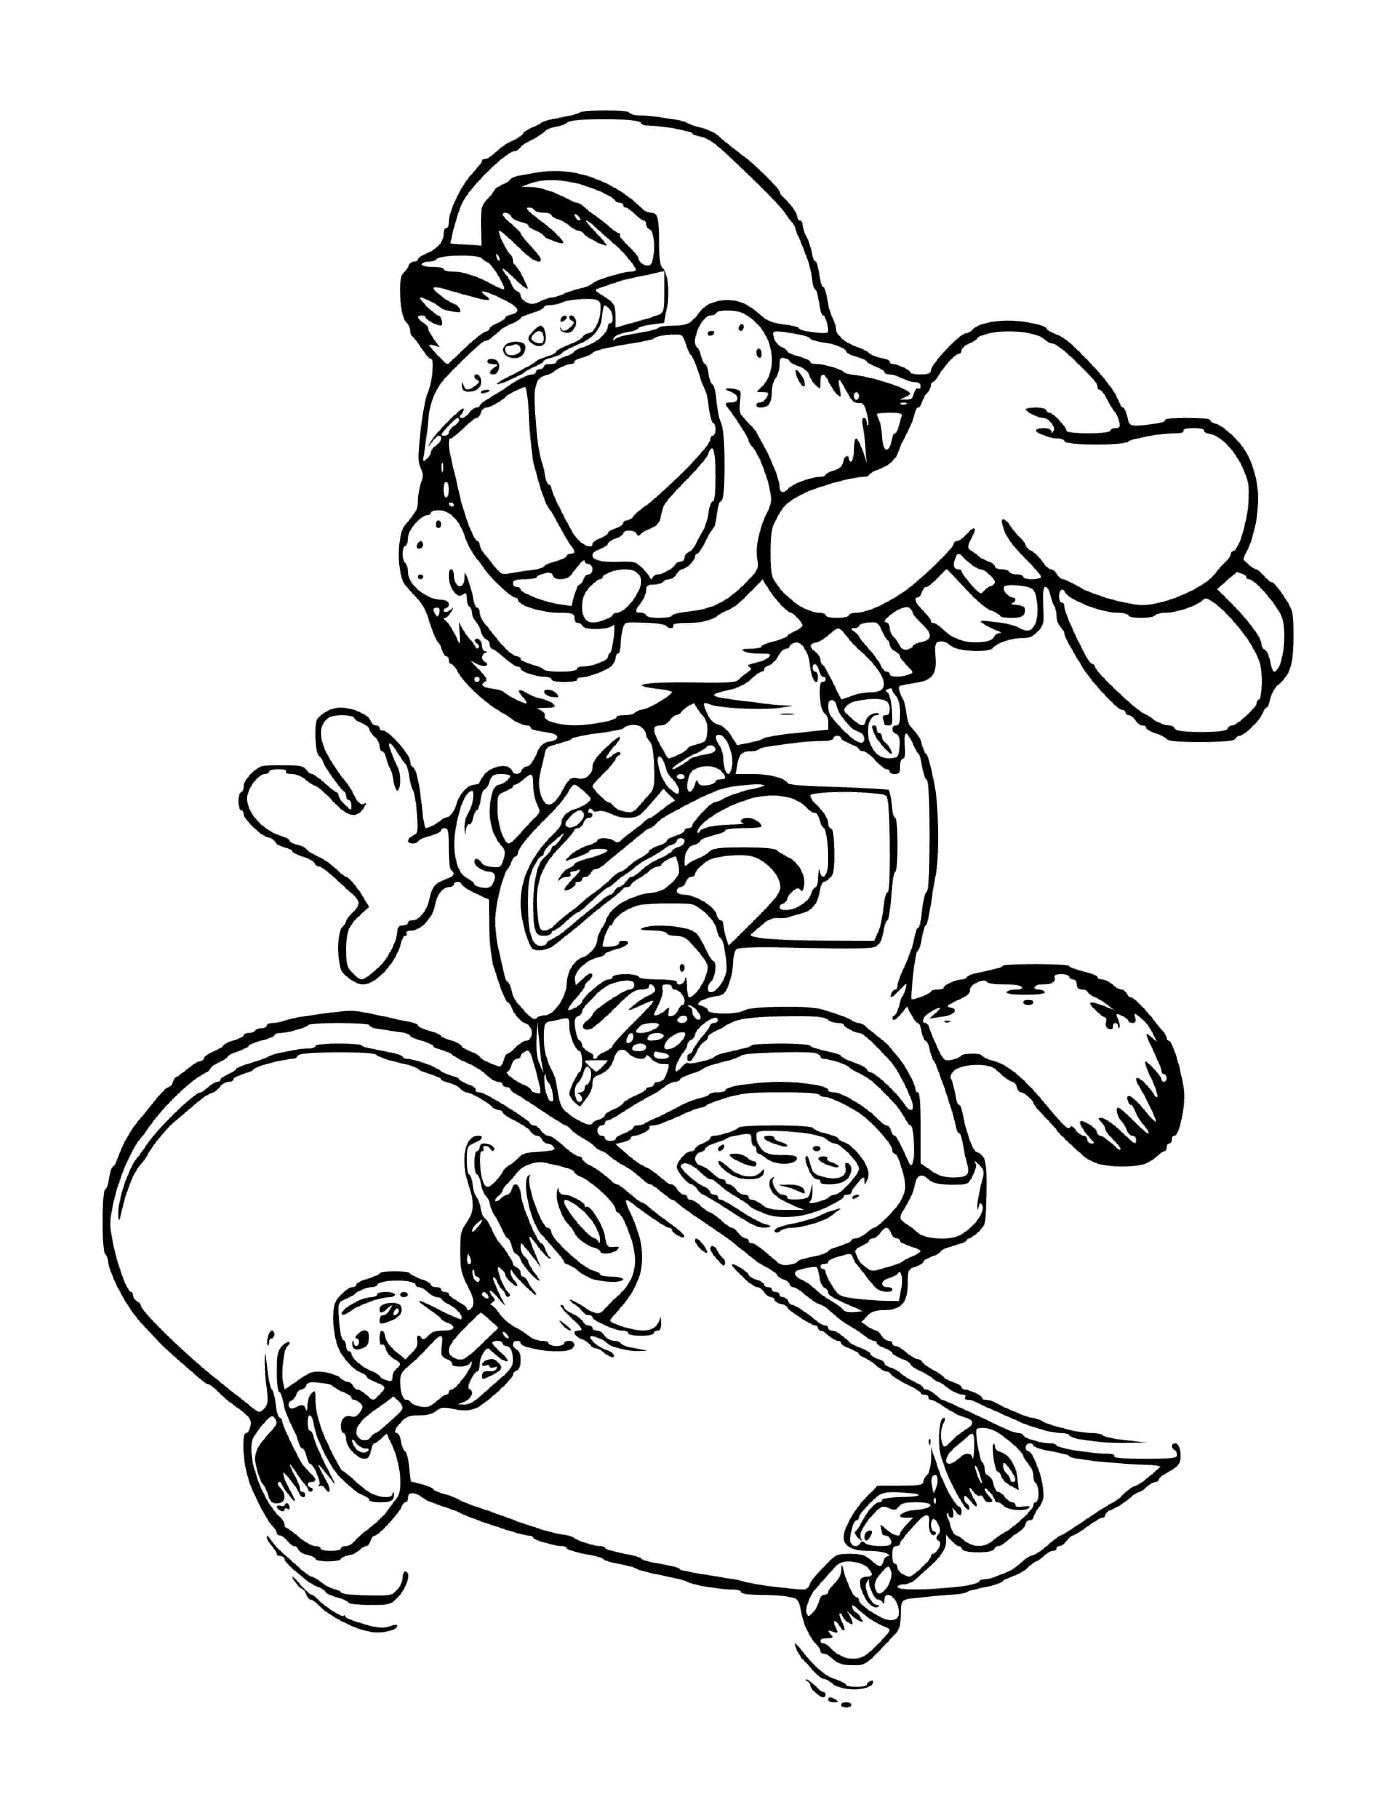 Garfield en skateboard